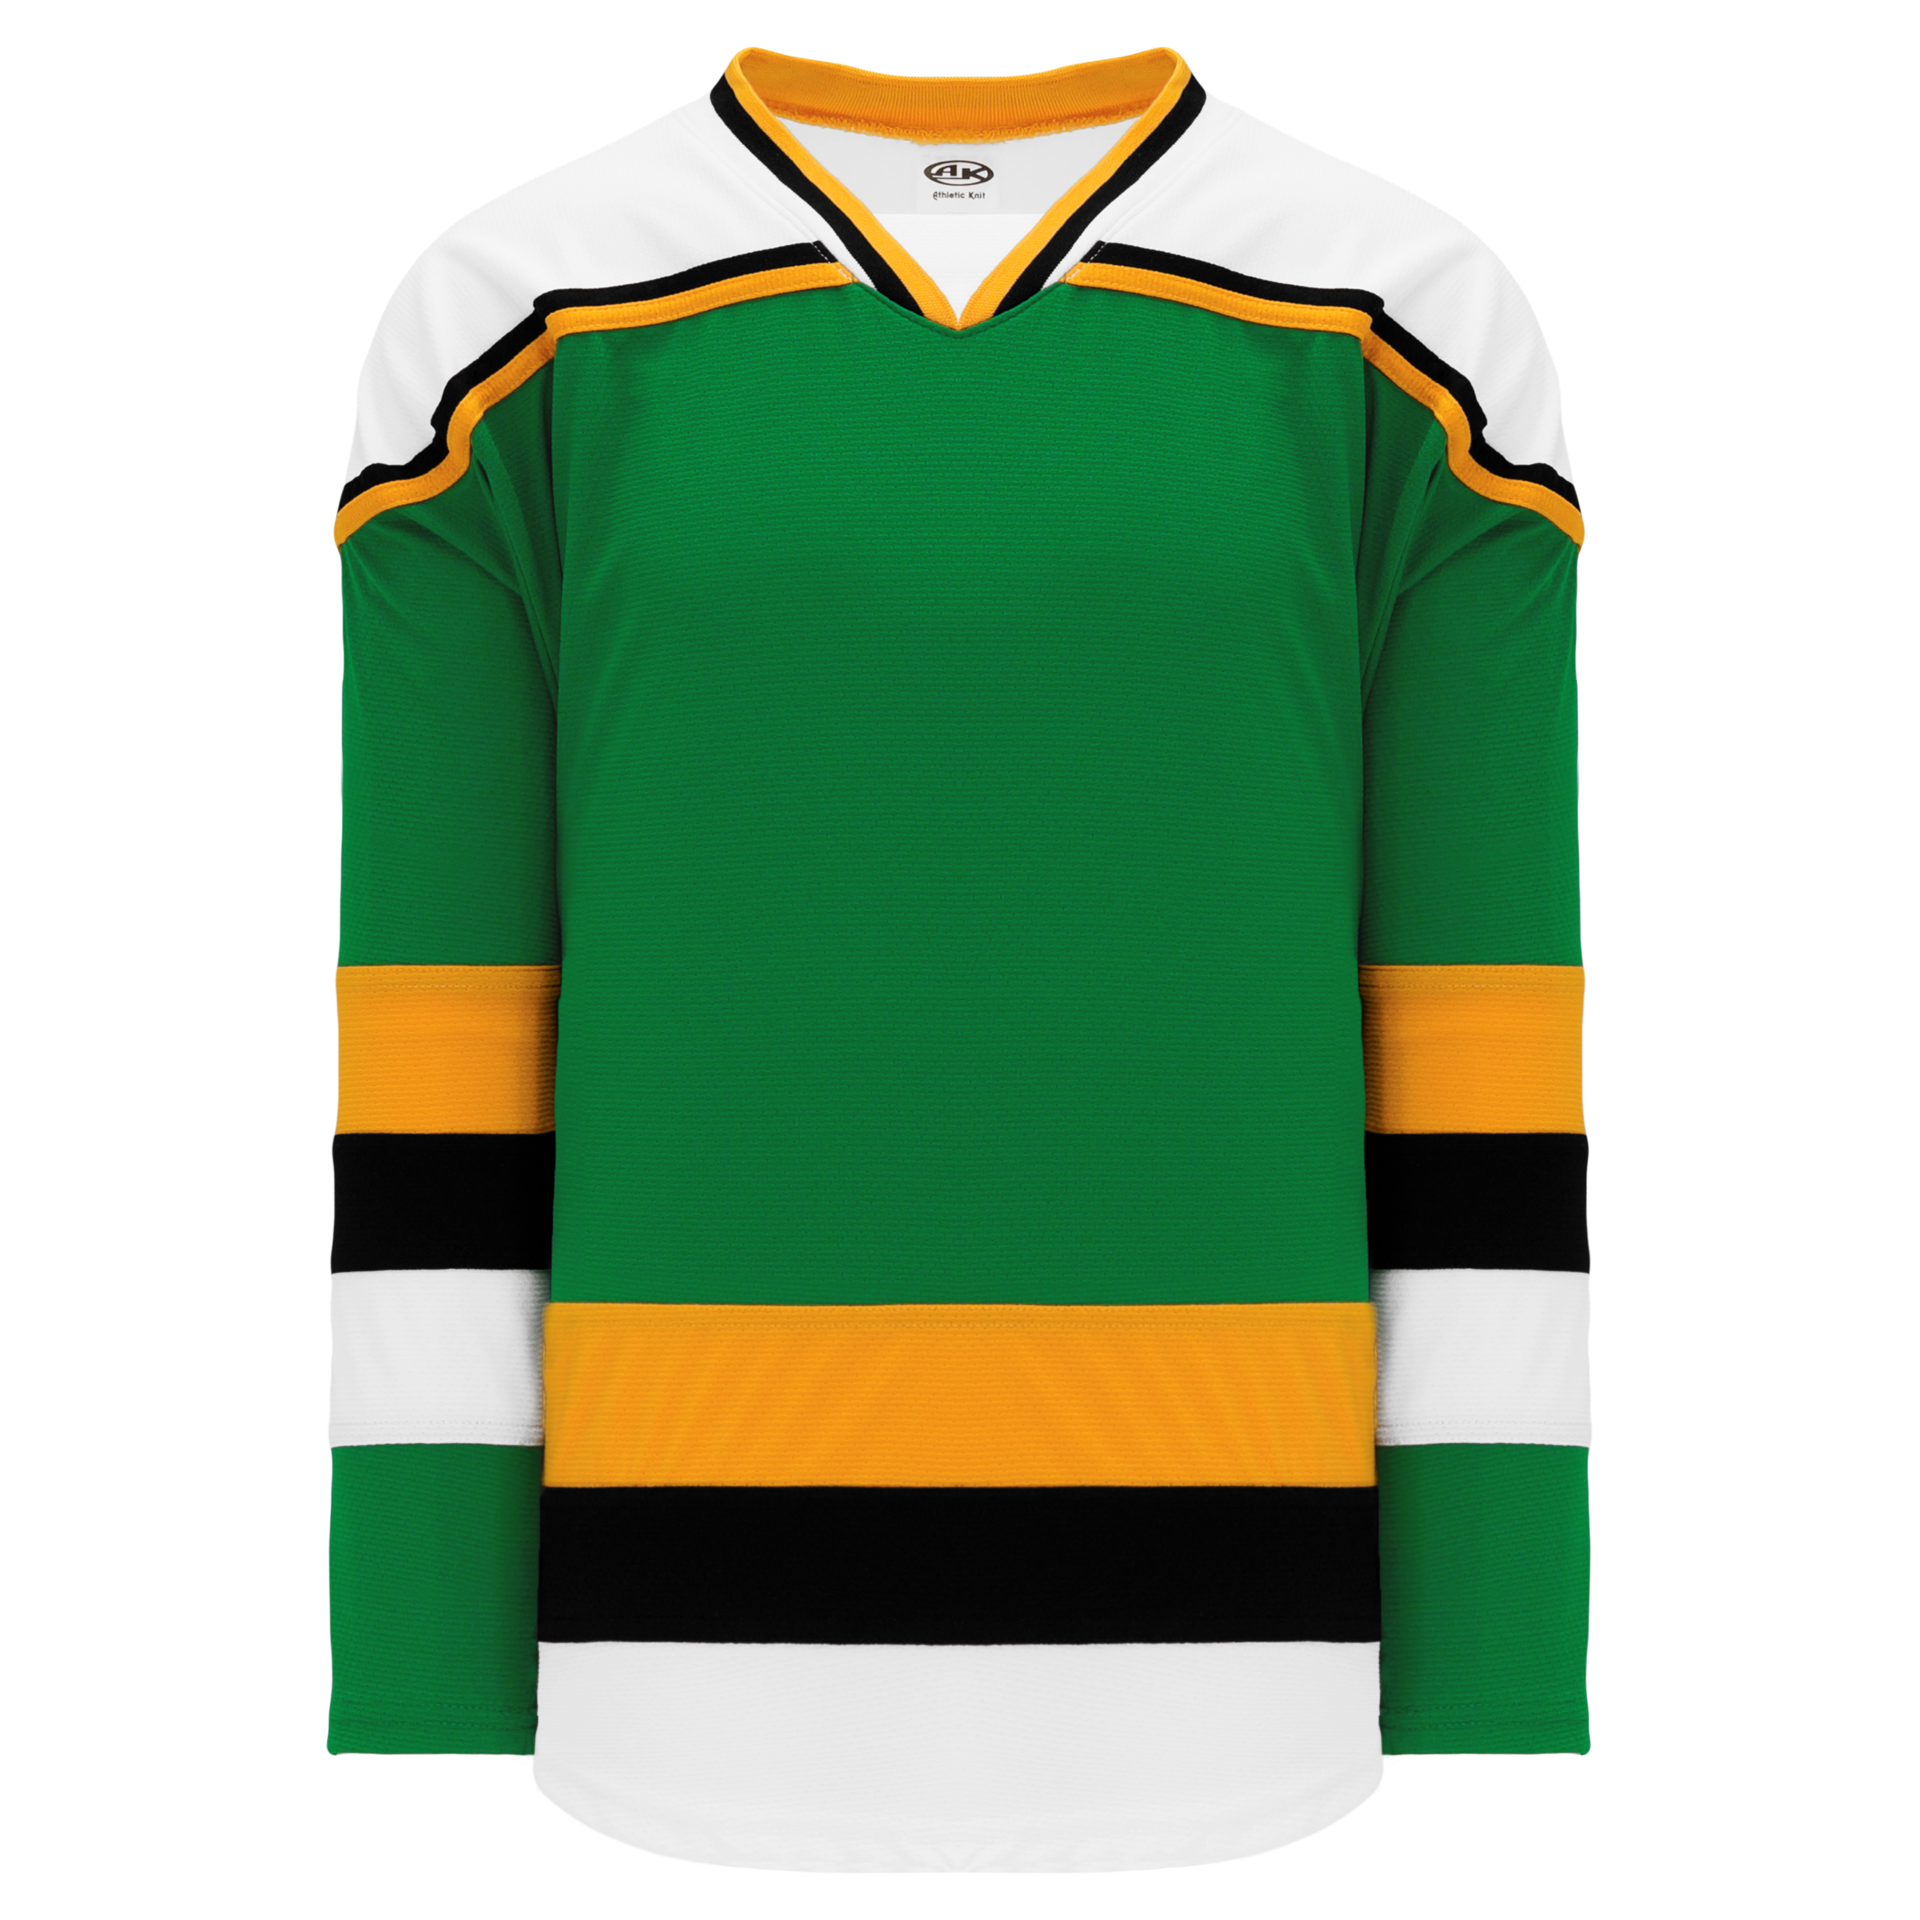 Blank Kelly Green Hockey Jersey Custom Team Logo - Buy Hockey Jersey,Blank  Hockey Jersey,Kelly Green Hockey Jersey Product on